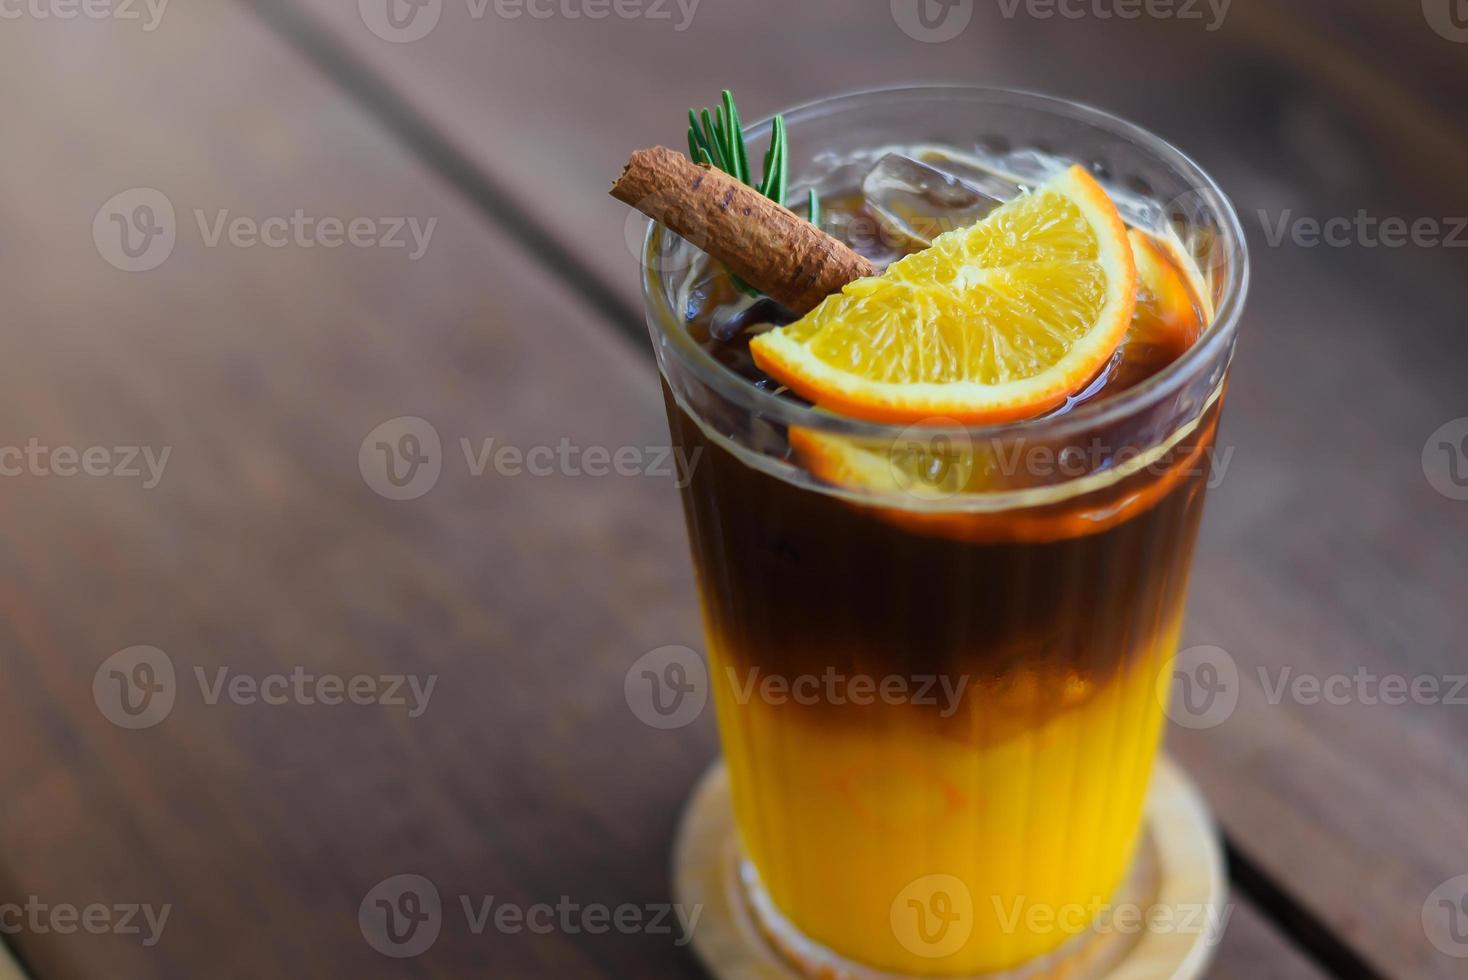 café preto gelado misturado com suco de laranja em cobertura de vidro com laranjas fatiadas, folhas de alecrim e canela por cima. em uma montanha-russa de madeira colocada sobre uma mesa de madeira. foto